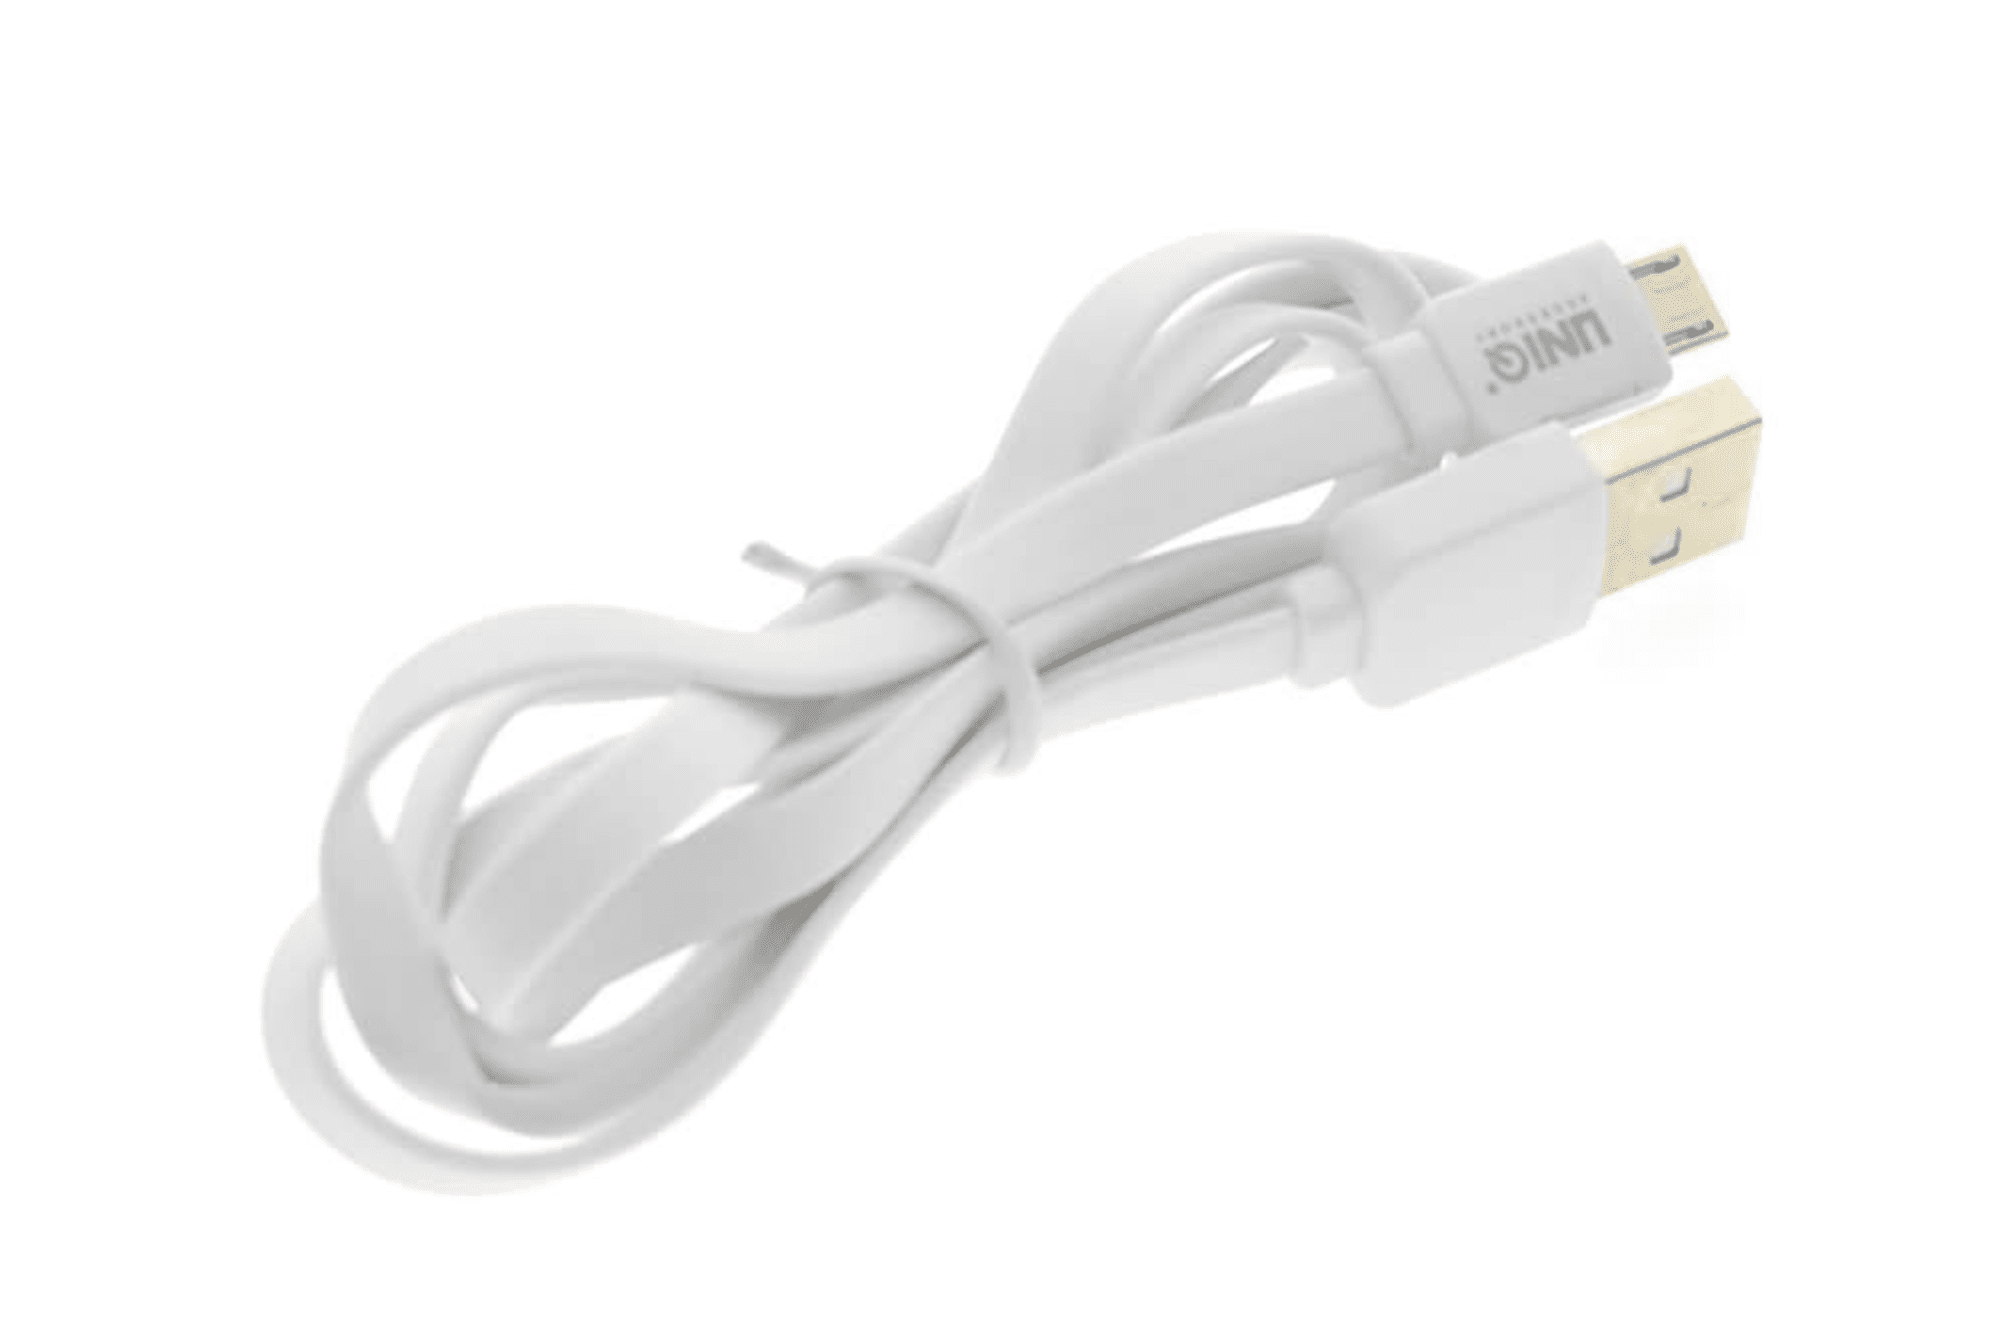 Câble Micro USB - 1 Mètre Blanc - Chargement rapide/transfert de données 2.1A - Accessoire Uniq.